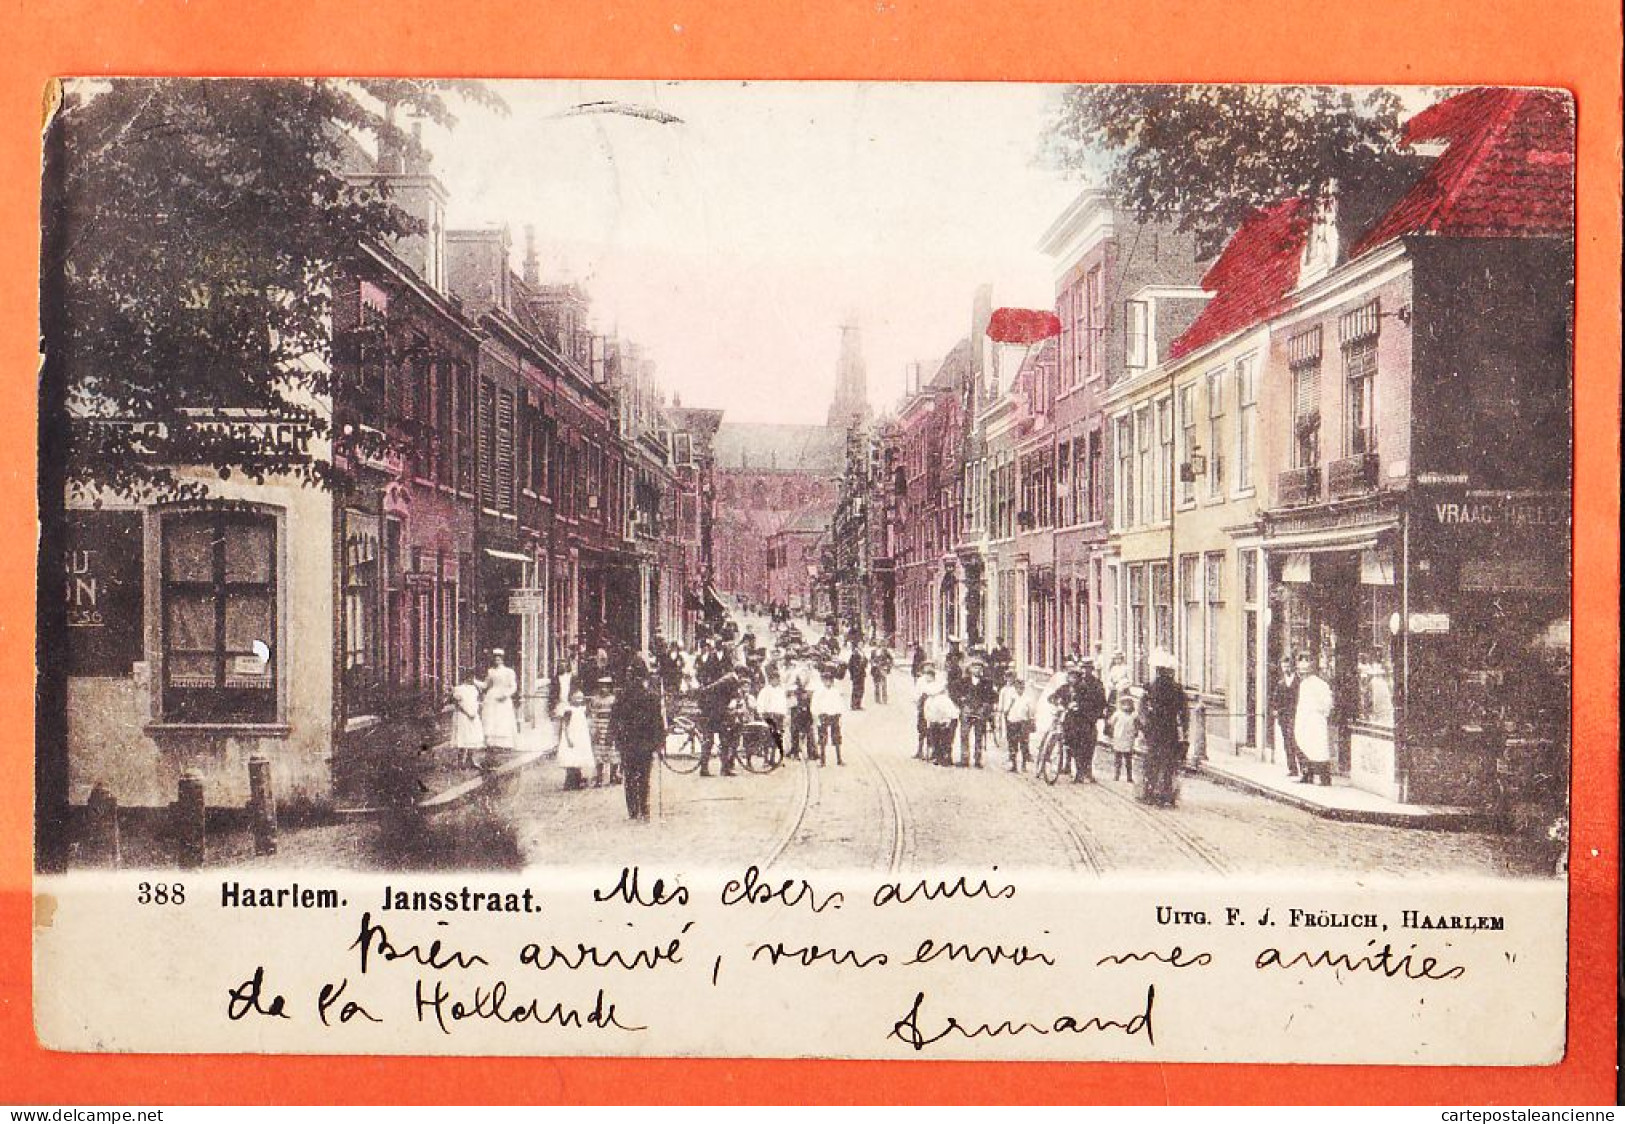 05962 / HAARLEM Noord-Holland JANSSTRAAT 1904 à Georgette WEILL Rue Enghien Paris-FRÖLICH 388 Nederland Pays-Bas  - Haarlem